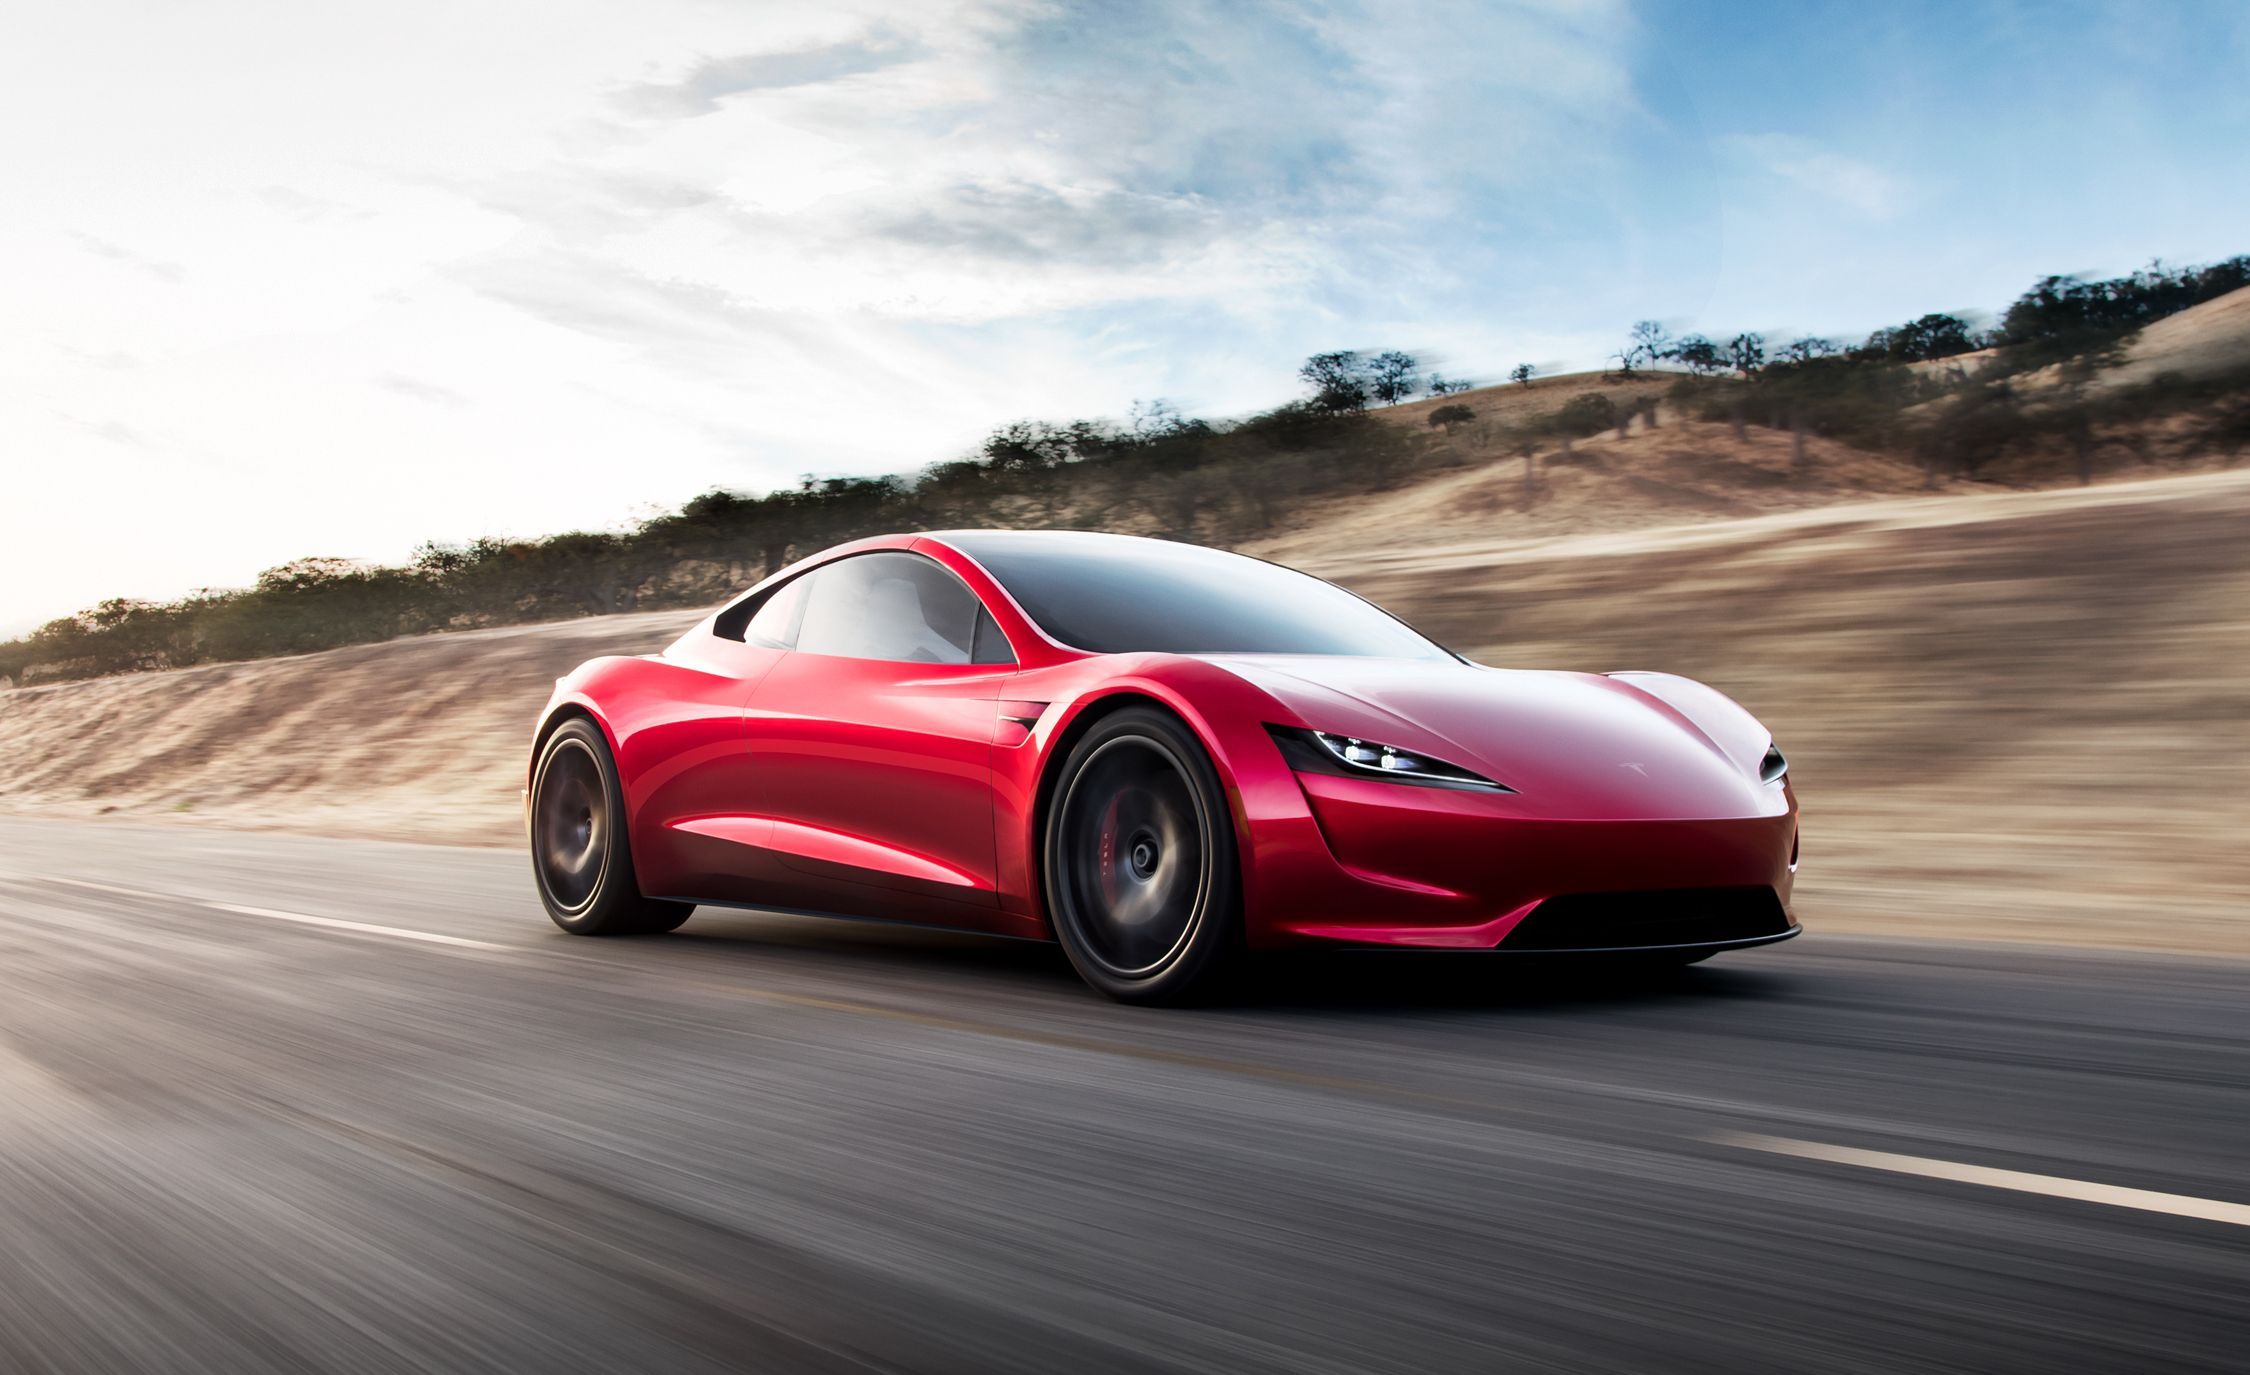 Red 2021 Tesla Roadster racing down road